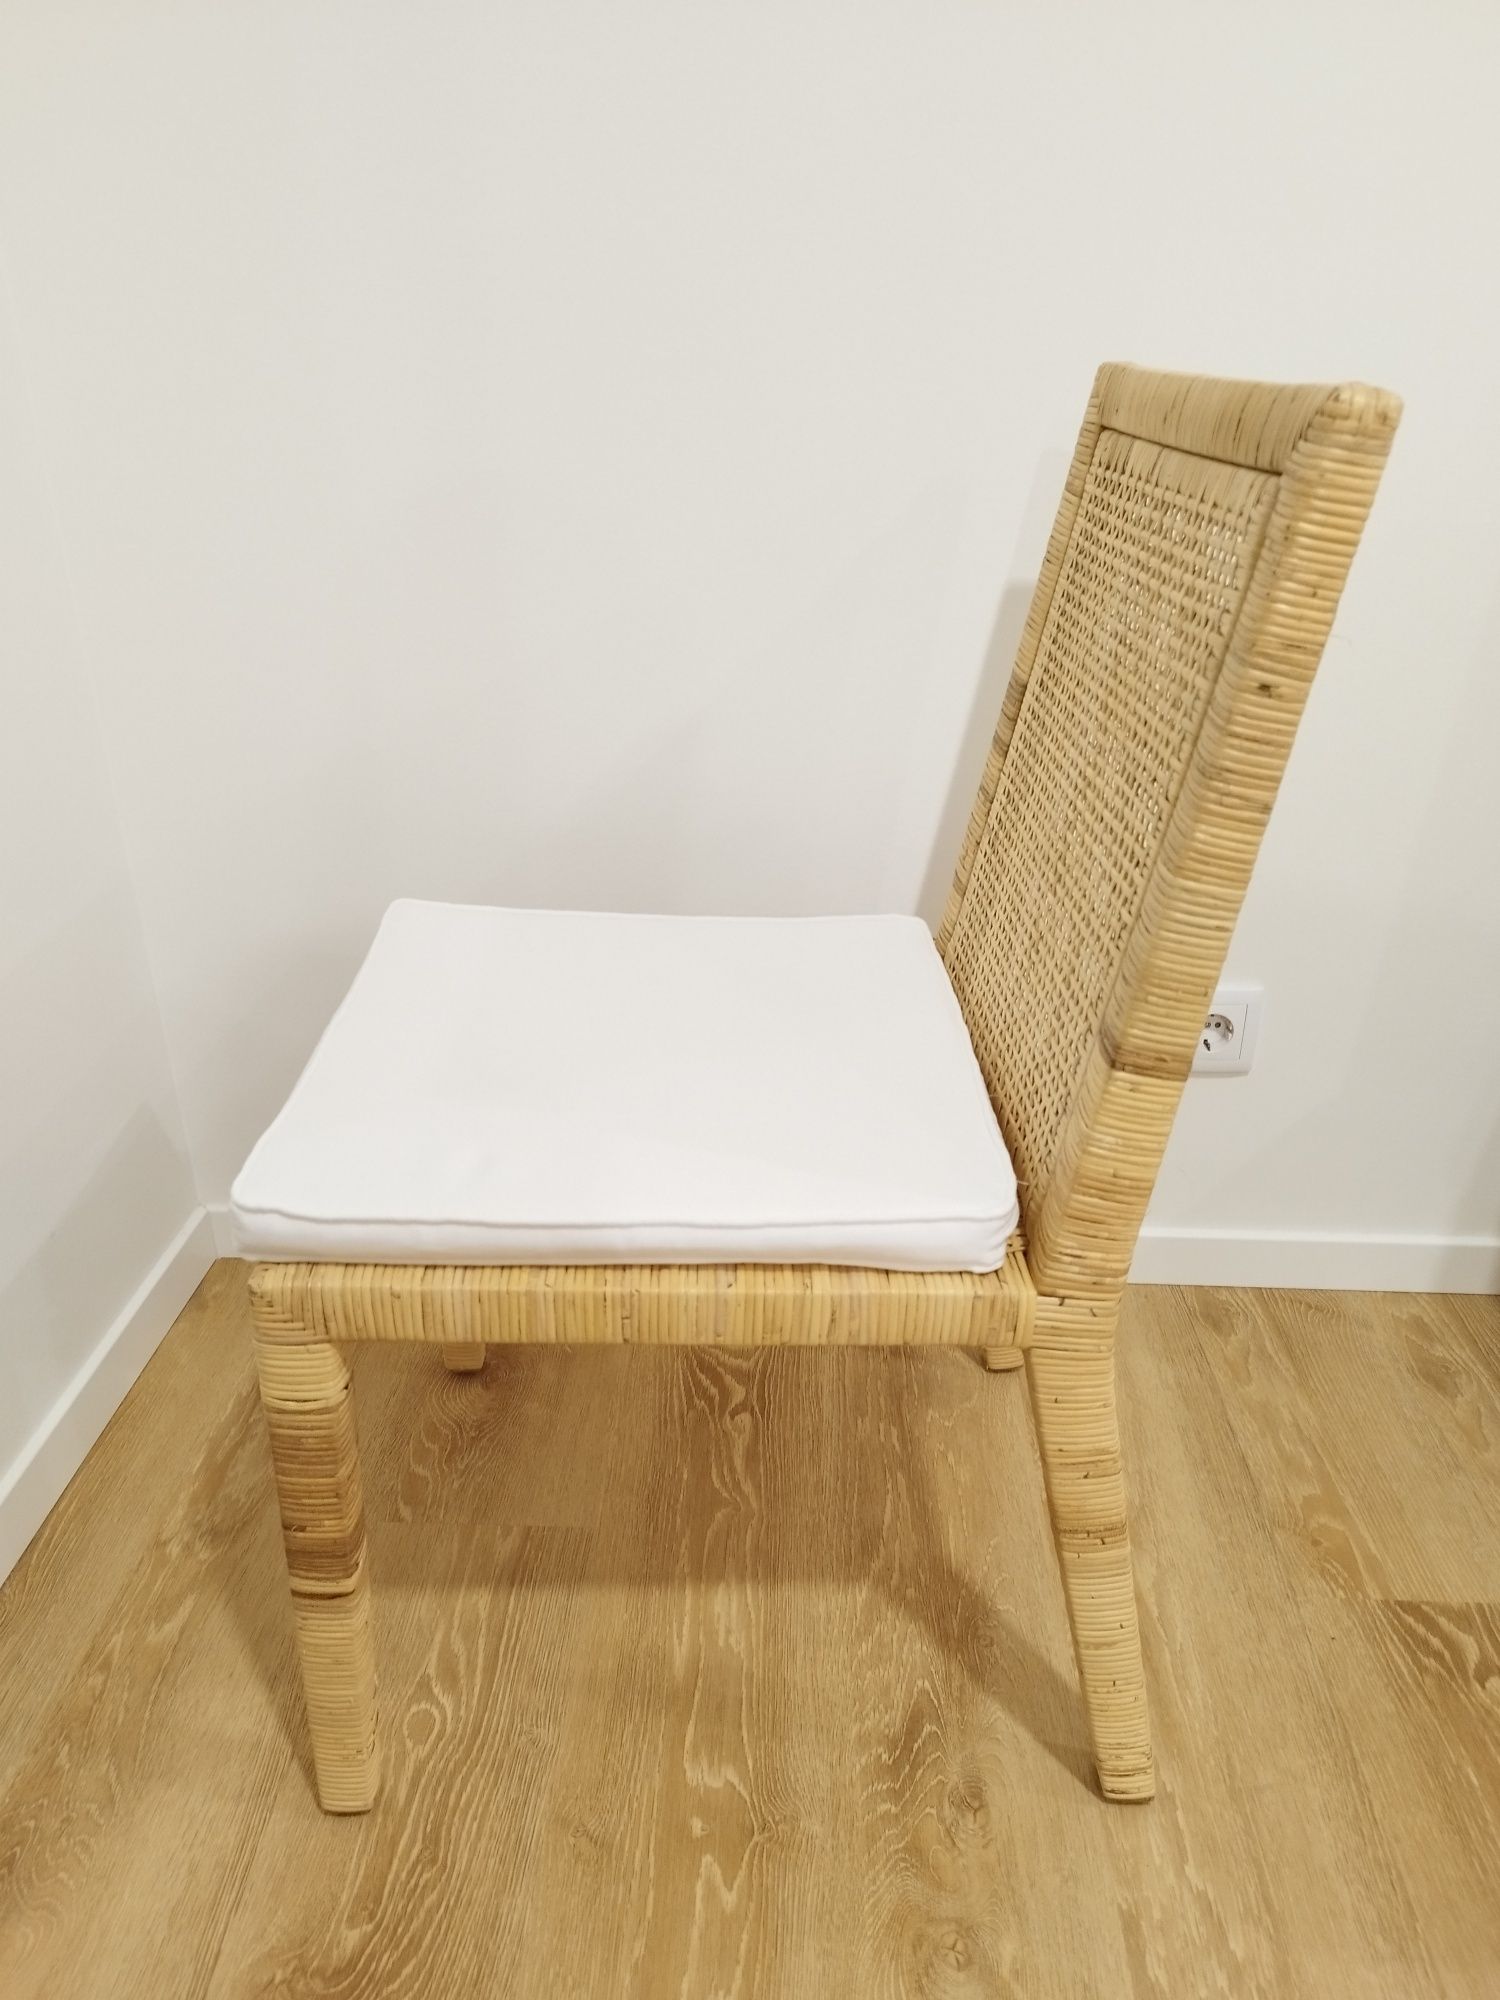 Conjunto 4 cadeiras em rotim, estilo moderno (modelo Peel, marca Kenay